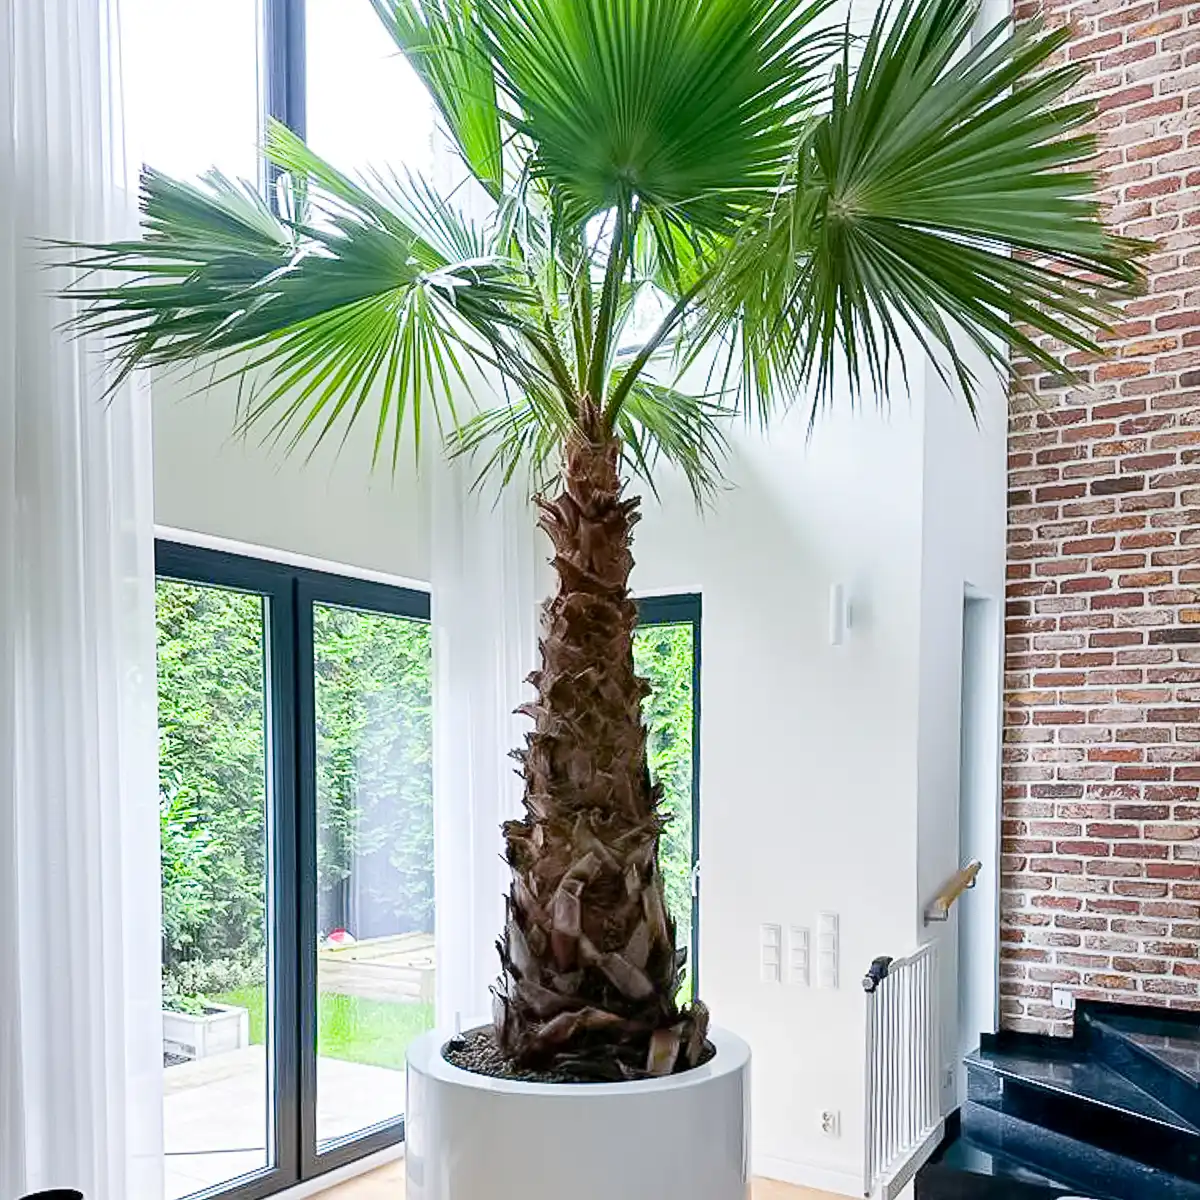 Tropikalna palma we wnętrzu - popularne gatunki, pielęgnacja i dobór donicy.